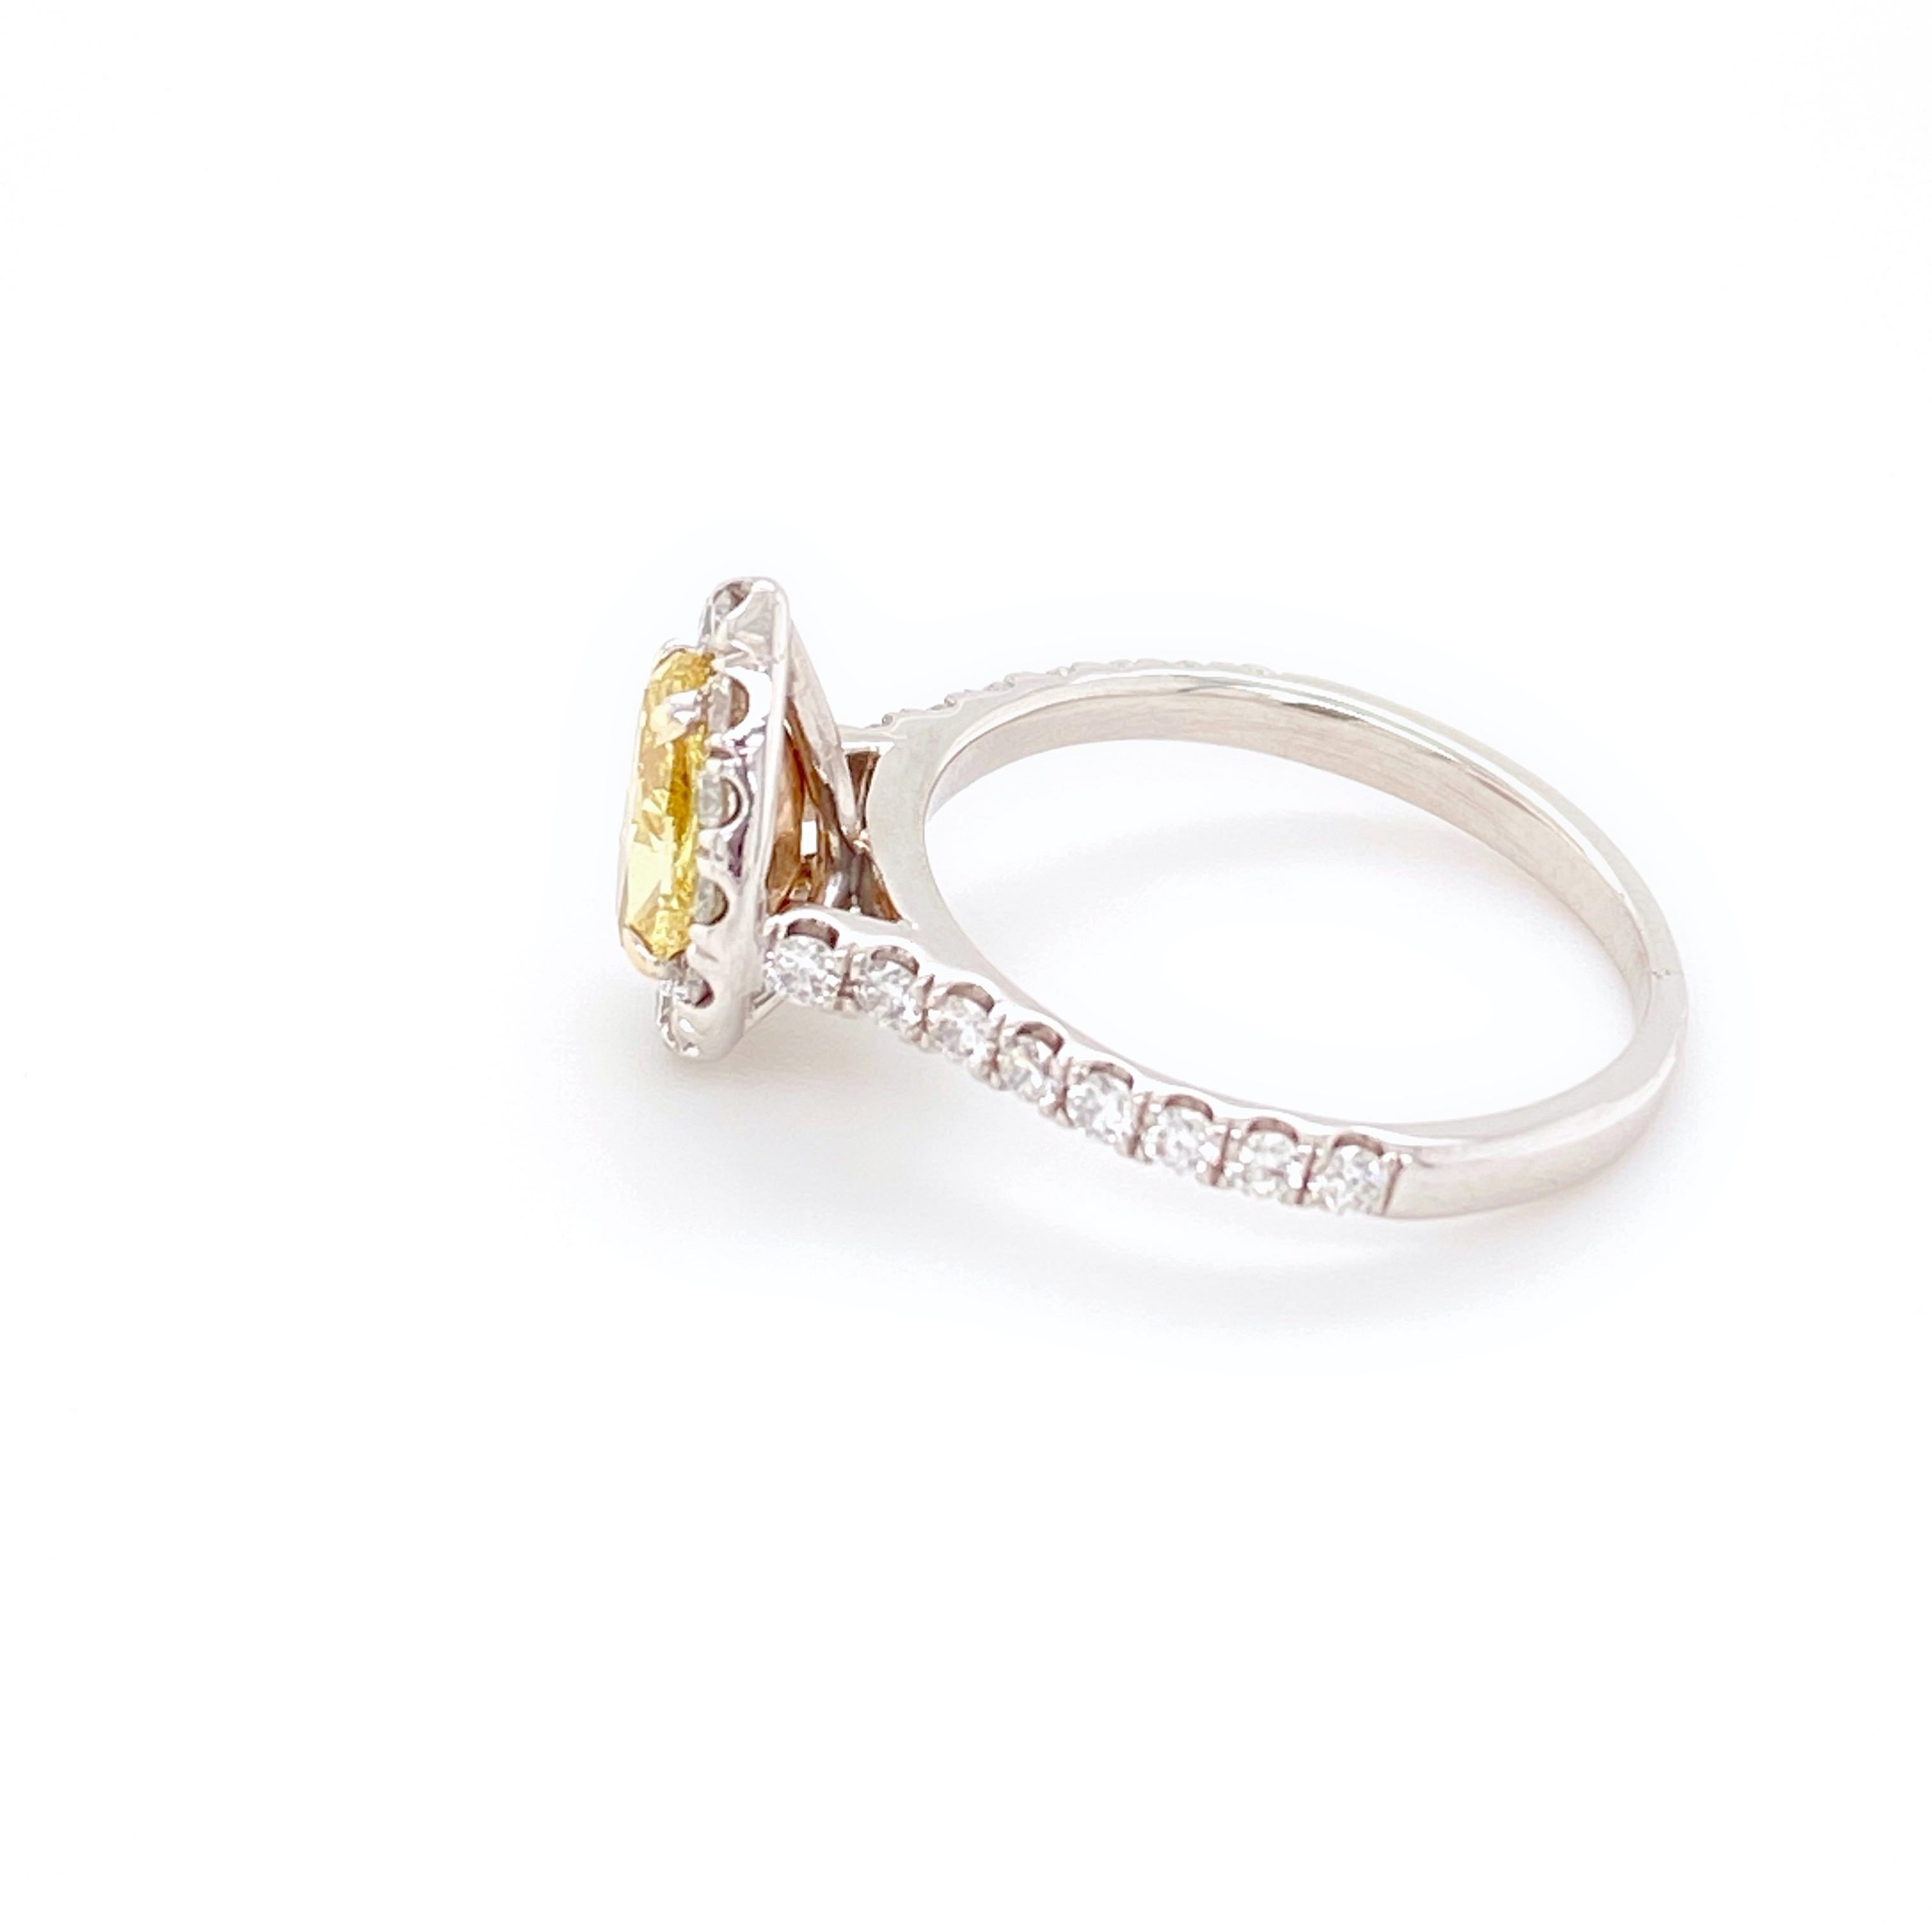 Fancy Intense Yellow Pear Shape Diamond Halo Ring 1.60 Carat 14 Karat GIA 5